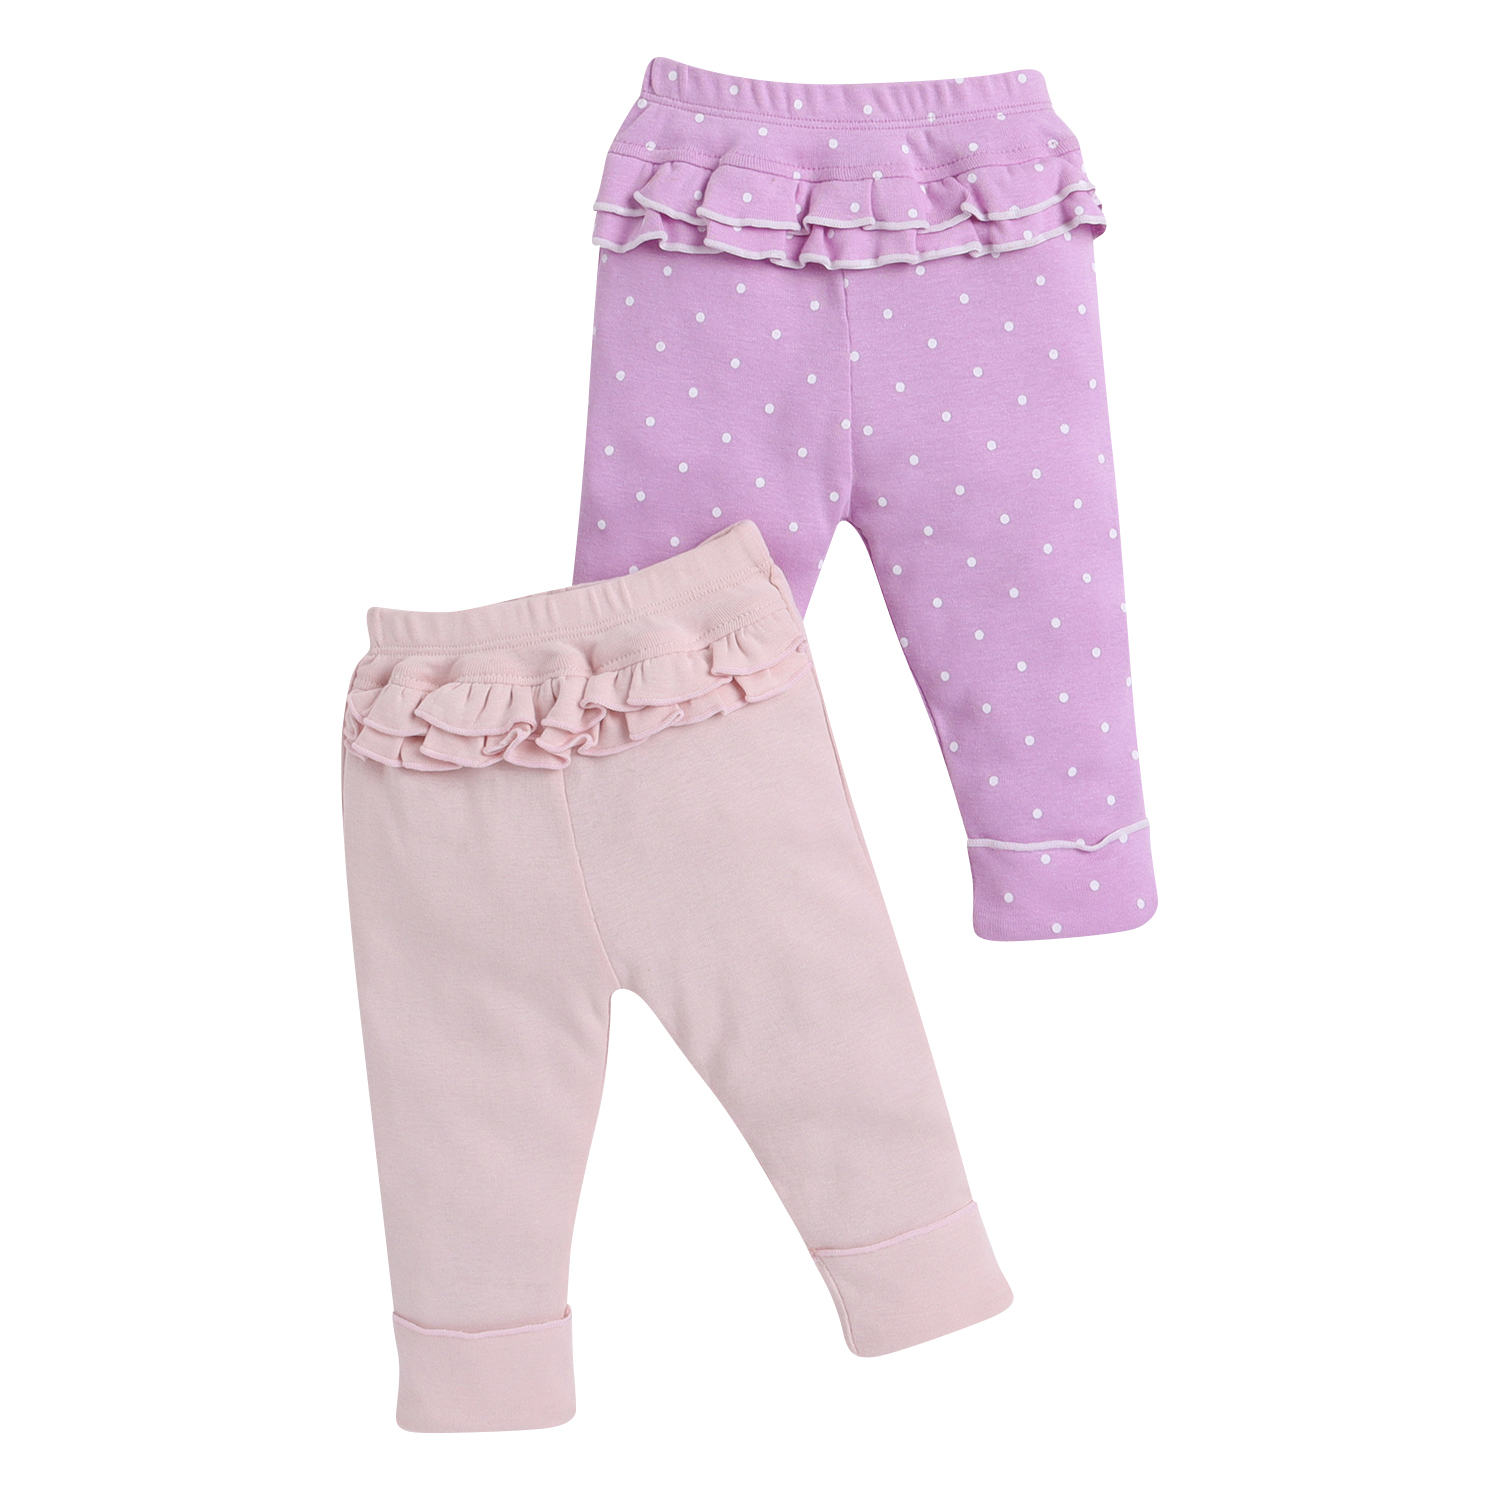 Rabbite Print Pink Leggings For Baby Girls – Nino Bambino